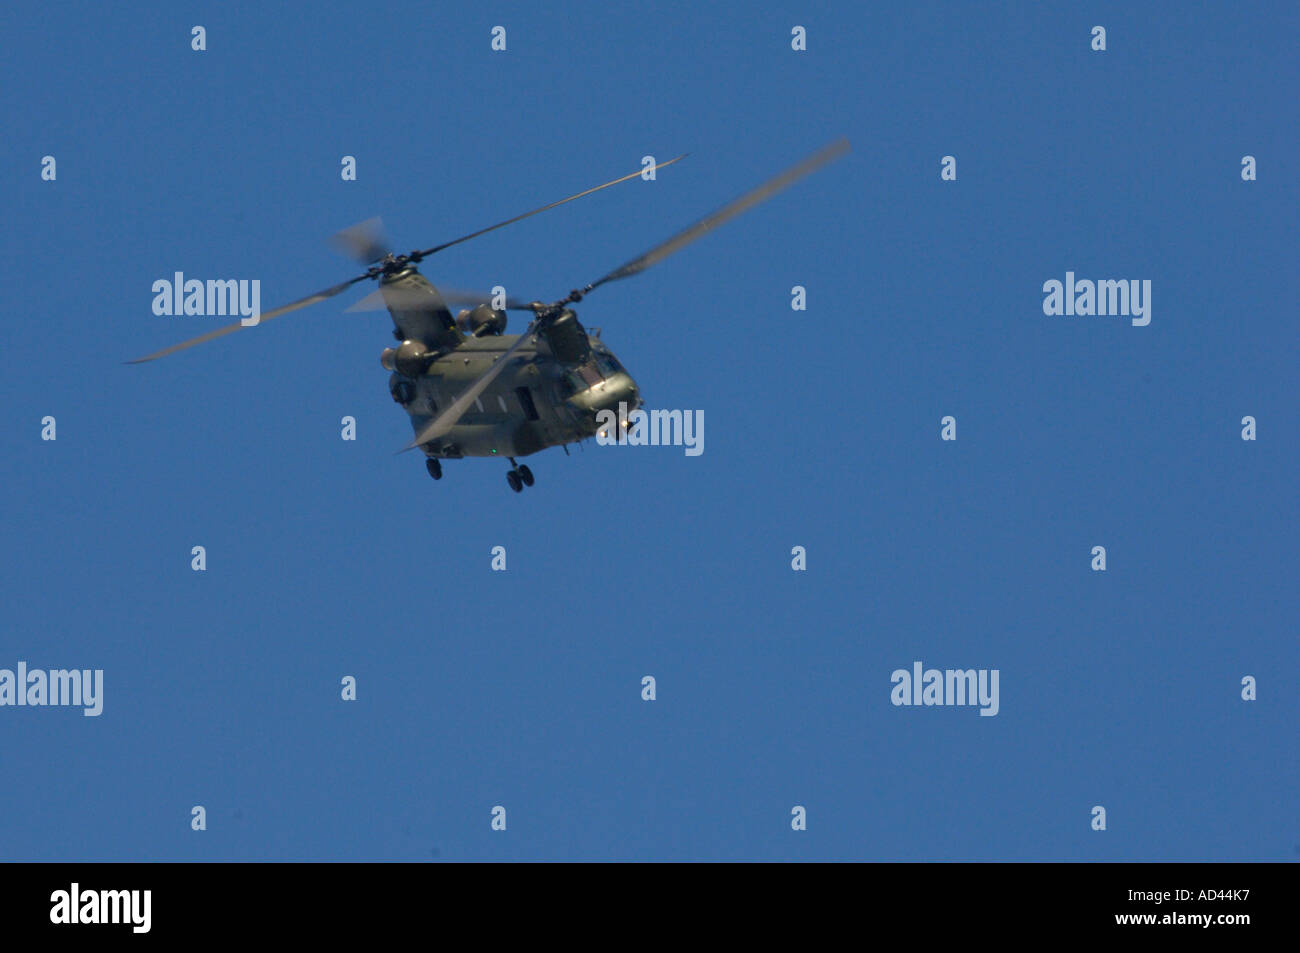 Un hélicoptère Chinook, voler dans un ciel bleu-clair. Banque D'Images